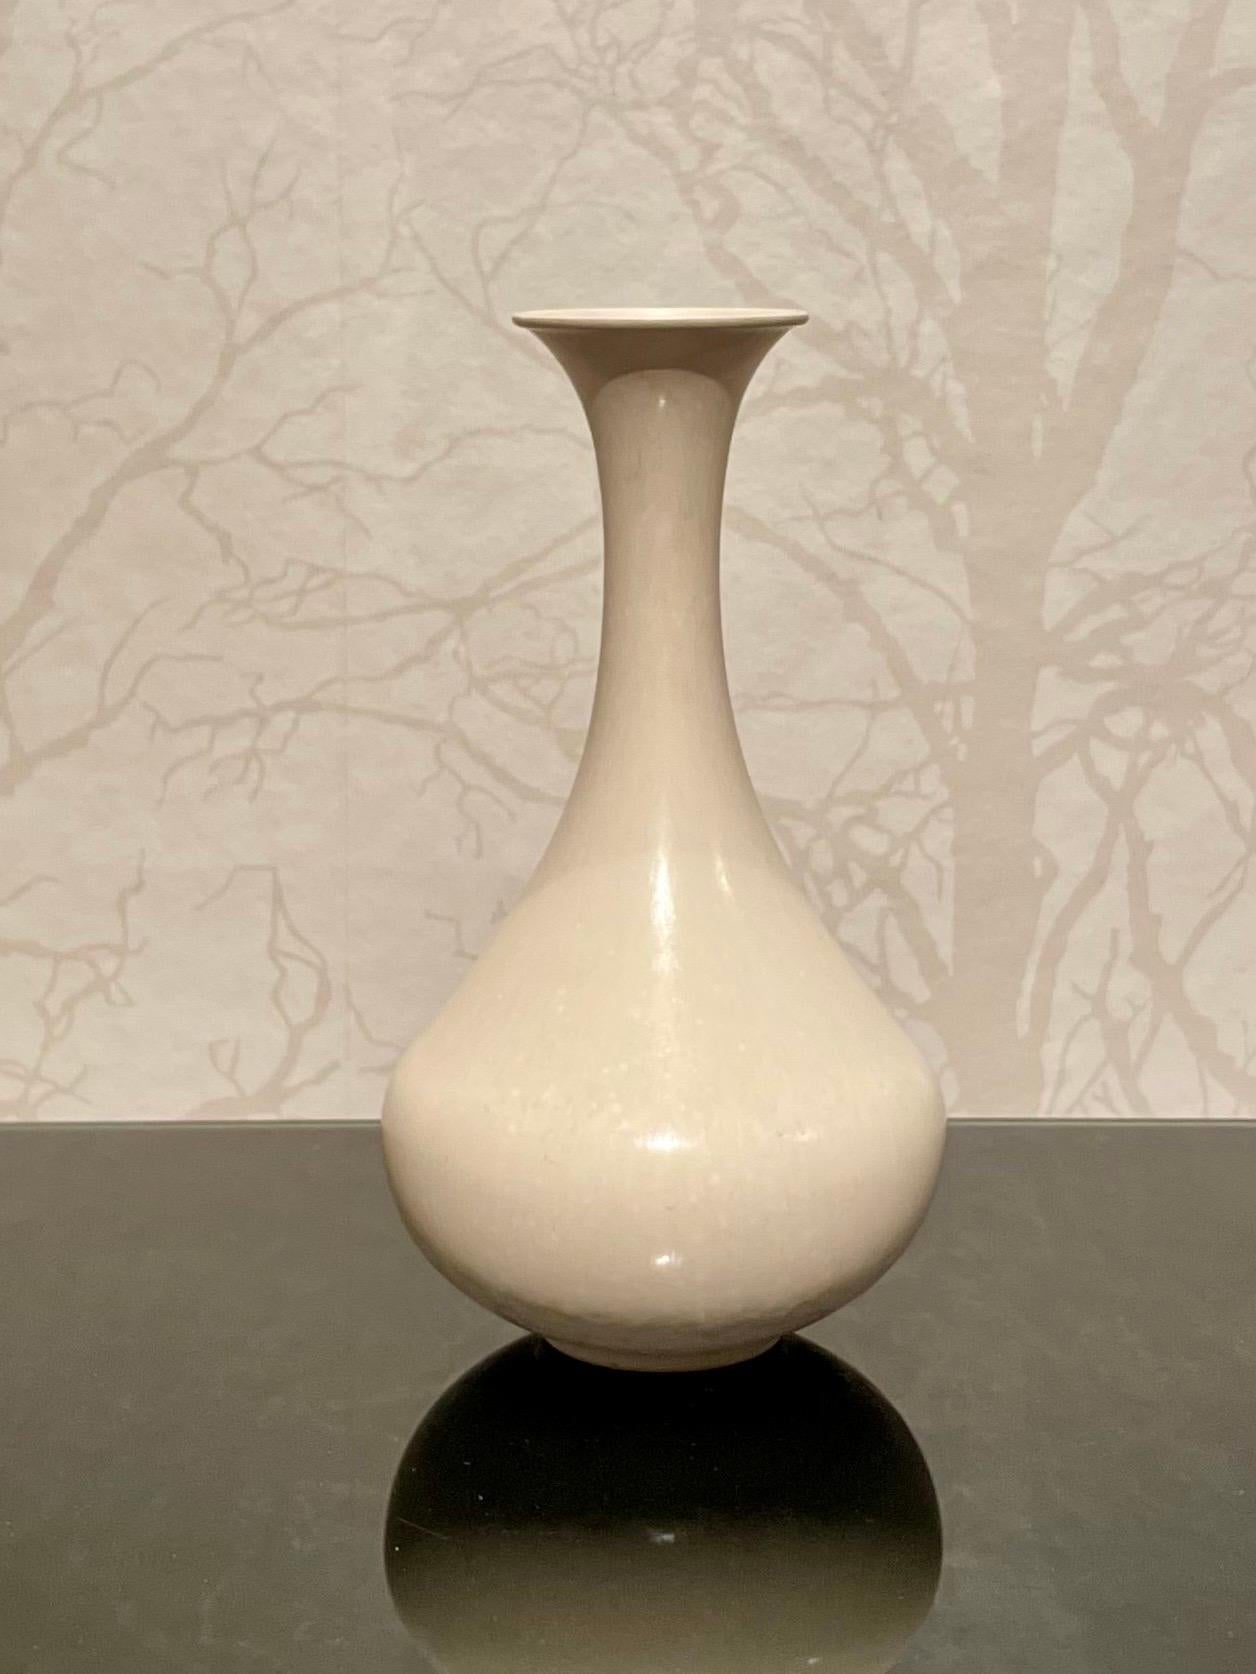 Dies ist die 1960er Jahre Eierschalen glasierte Keramikvase in weiß von Gunnar Nylund für Rörstrand. 
Sie hat eine weibliche, elegante Form und eine schlichte, weiße Eierschalenglasur mit seidenmatter Oberfläche. 
Die balustradenartige Form der Vase